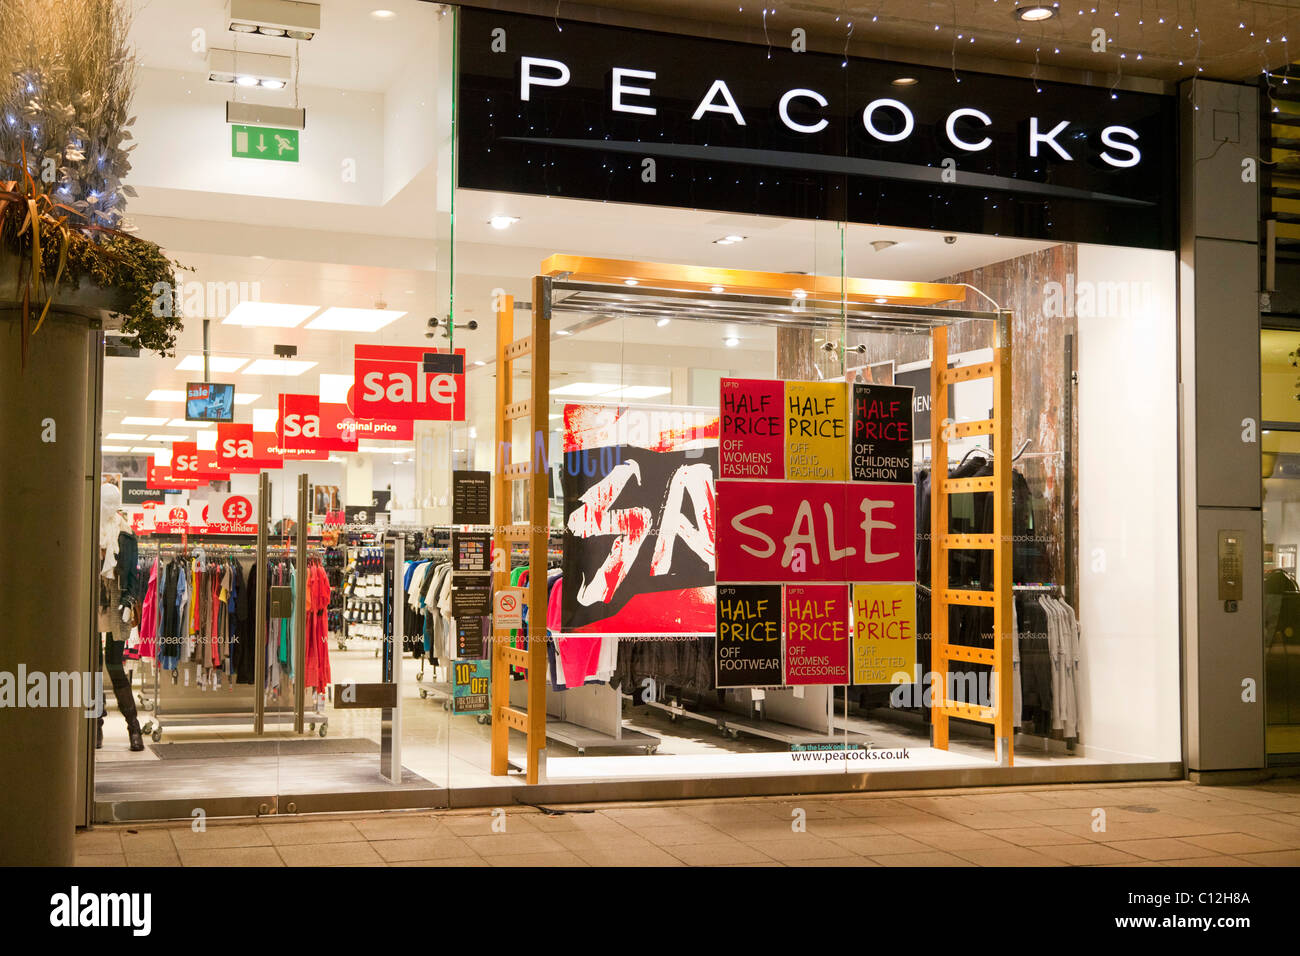 sales at Peacocks shop, UK Stock Photo